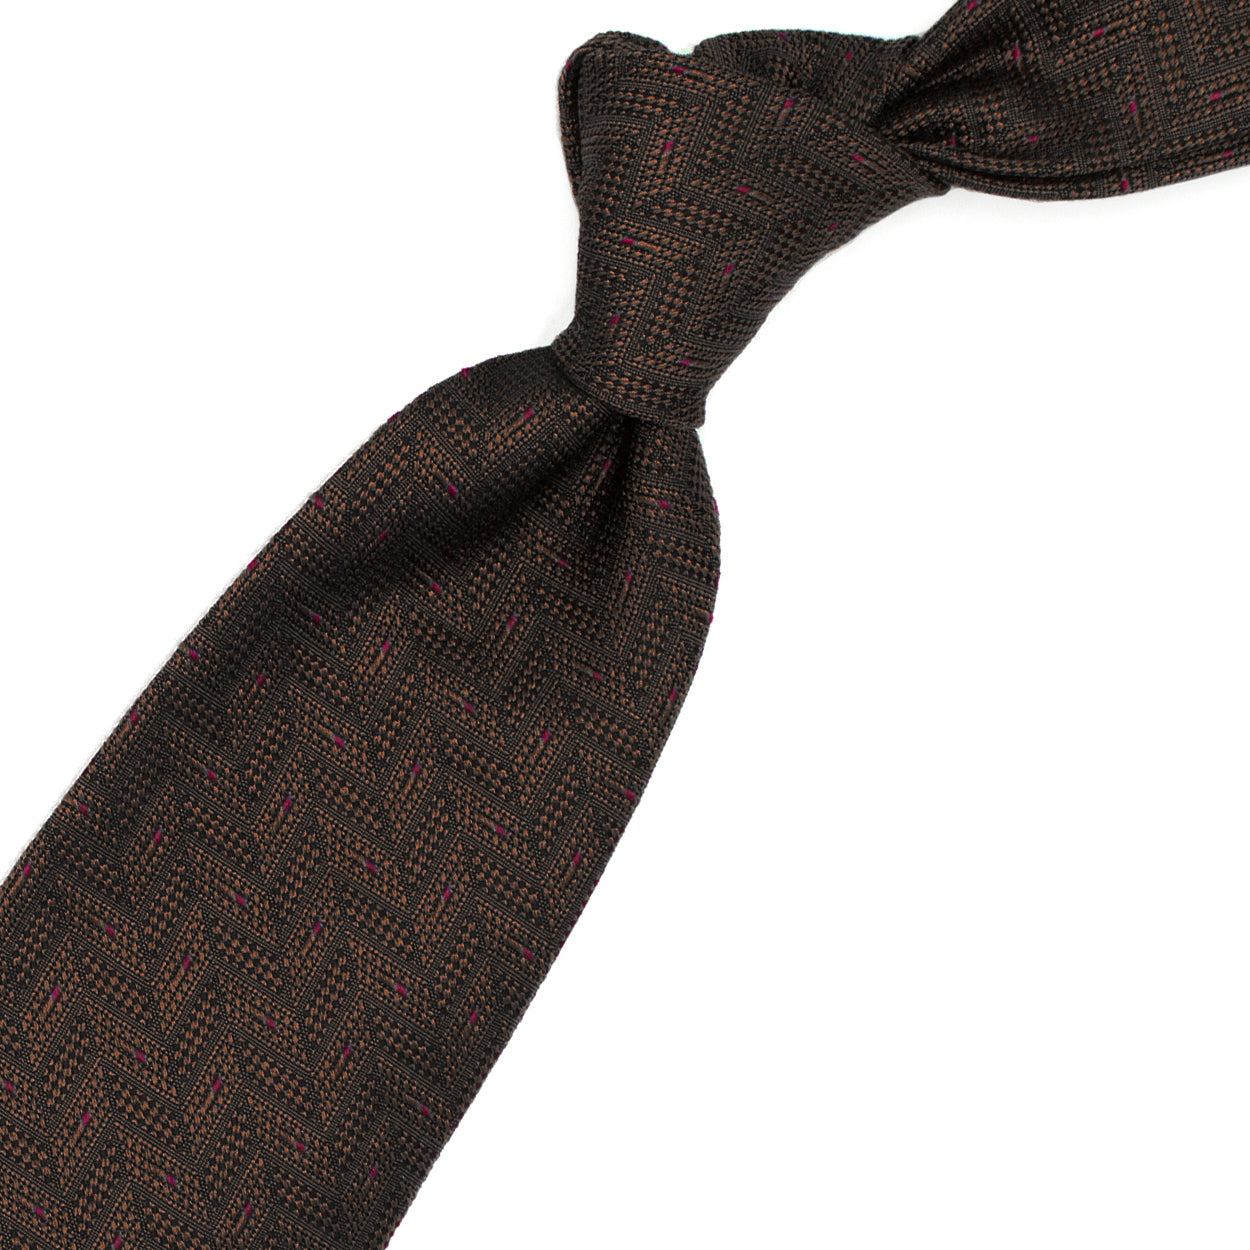 Cravatta marrone con pattern geometrico tono su tono e puntini rossi